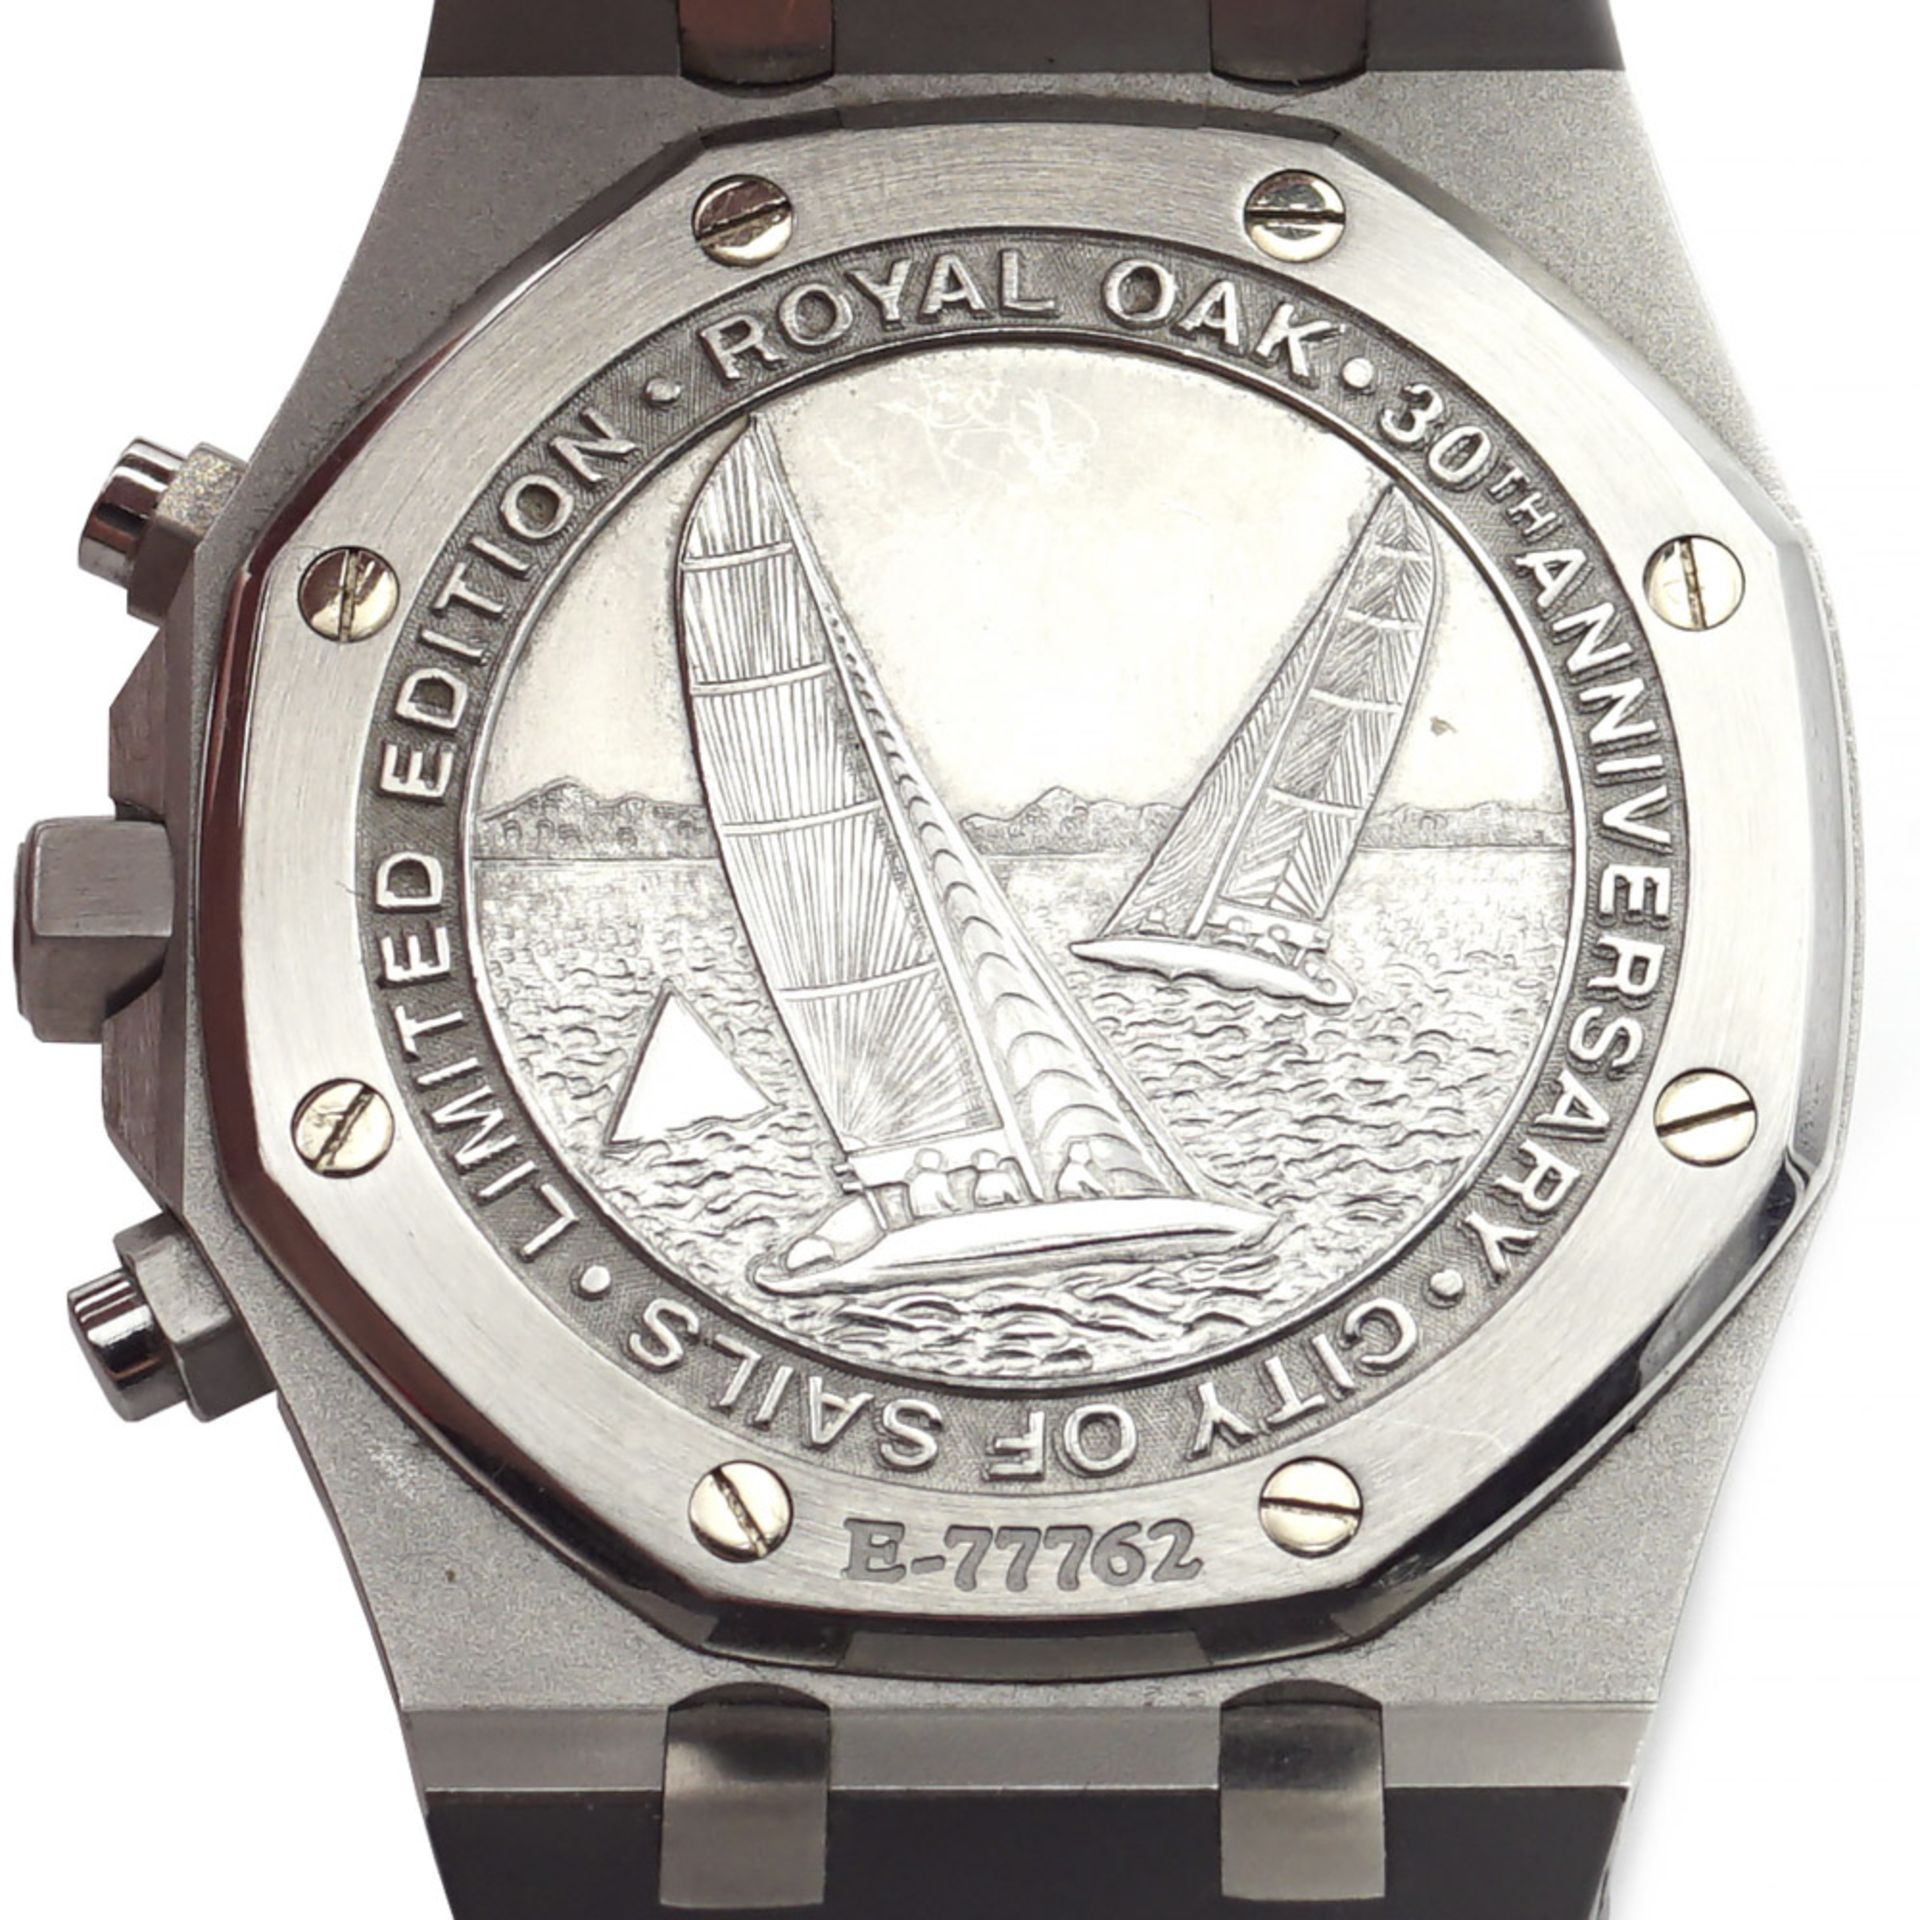 Audemars Piguet Royal Oak Alinghi City Of Sails, wristwatch 2000s - Image 3 of 4